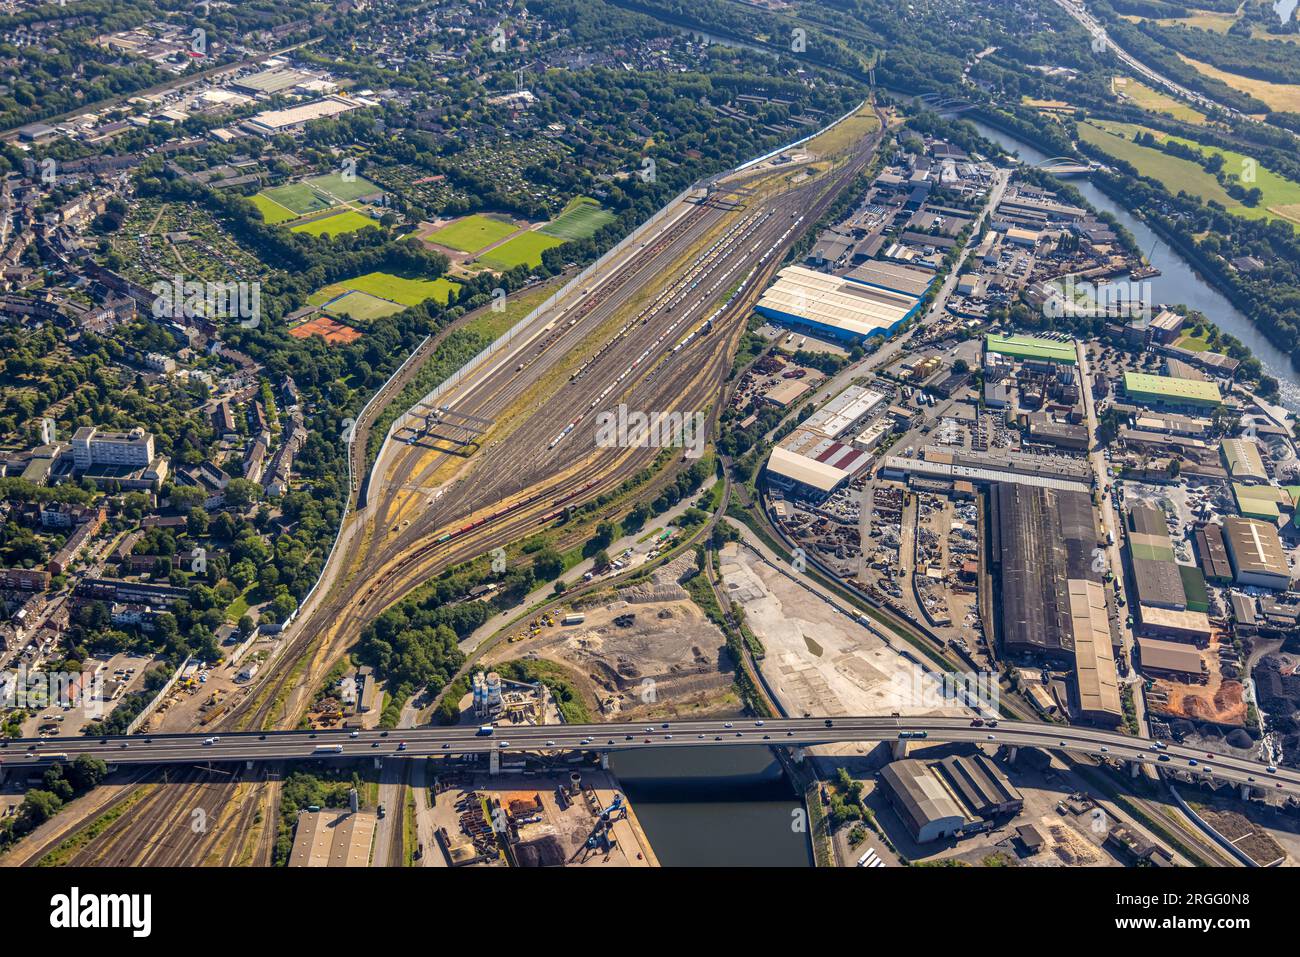 Luftbild, Güterbahnhof Hochfeld-Süd, Wanheimerort, Duisburg, Ruhrgebiet, Nordrhein-Westfalen, Deutschland Stock Photo